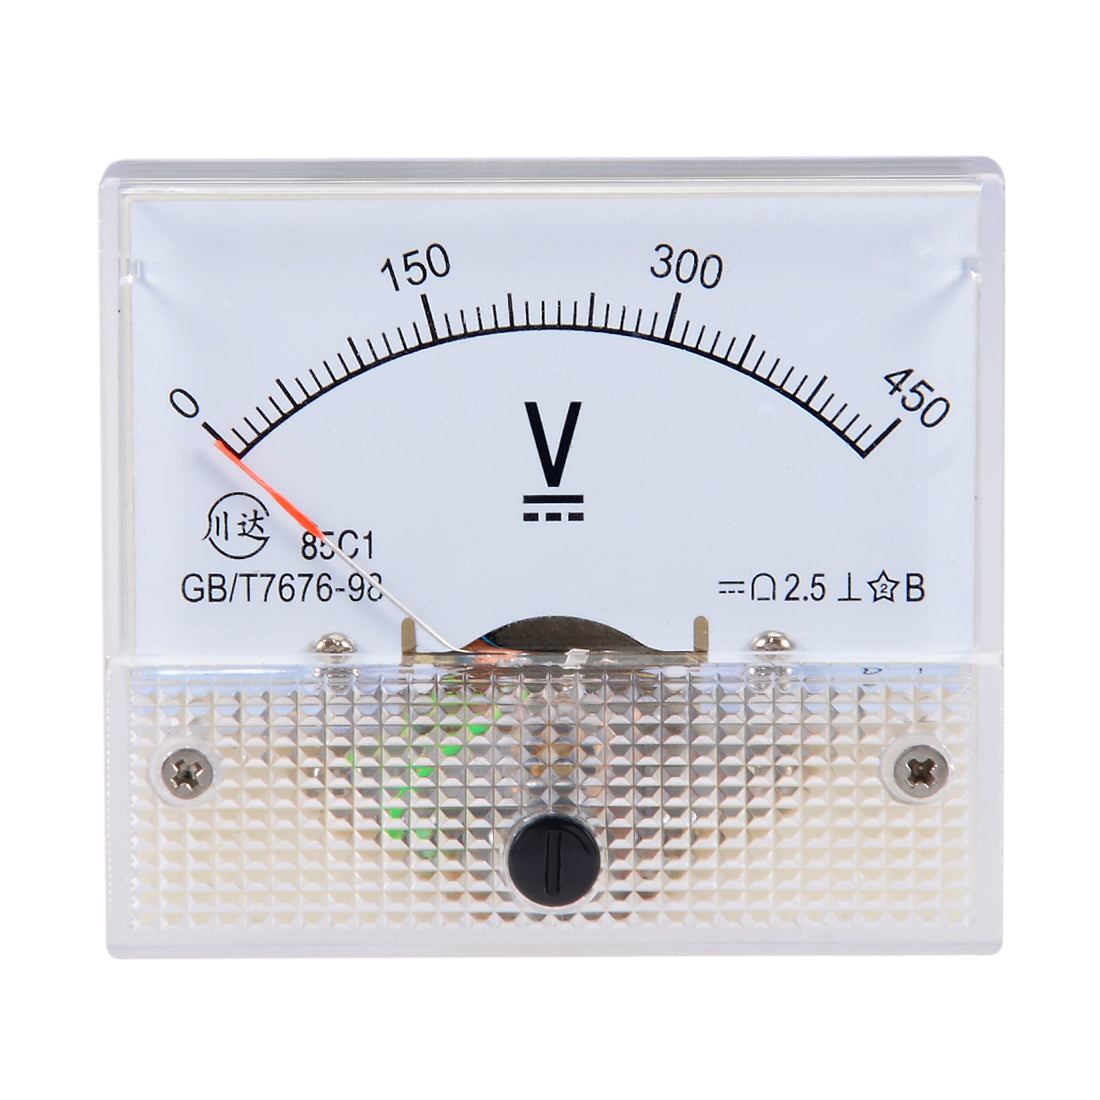 uxcell Uxcell DC 0-450V Analog Panel Voltage Gauge Volt Meter 85C1 2.5% Error Margin